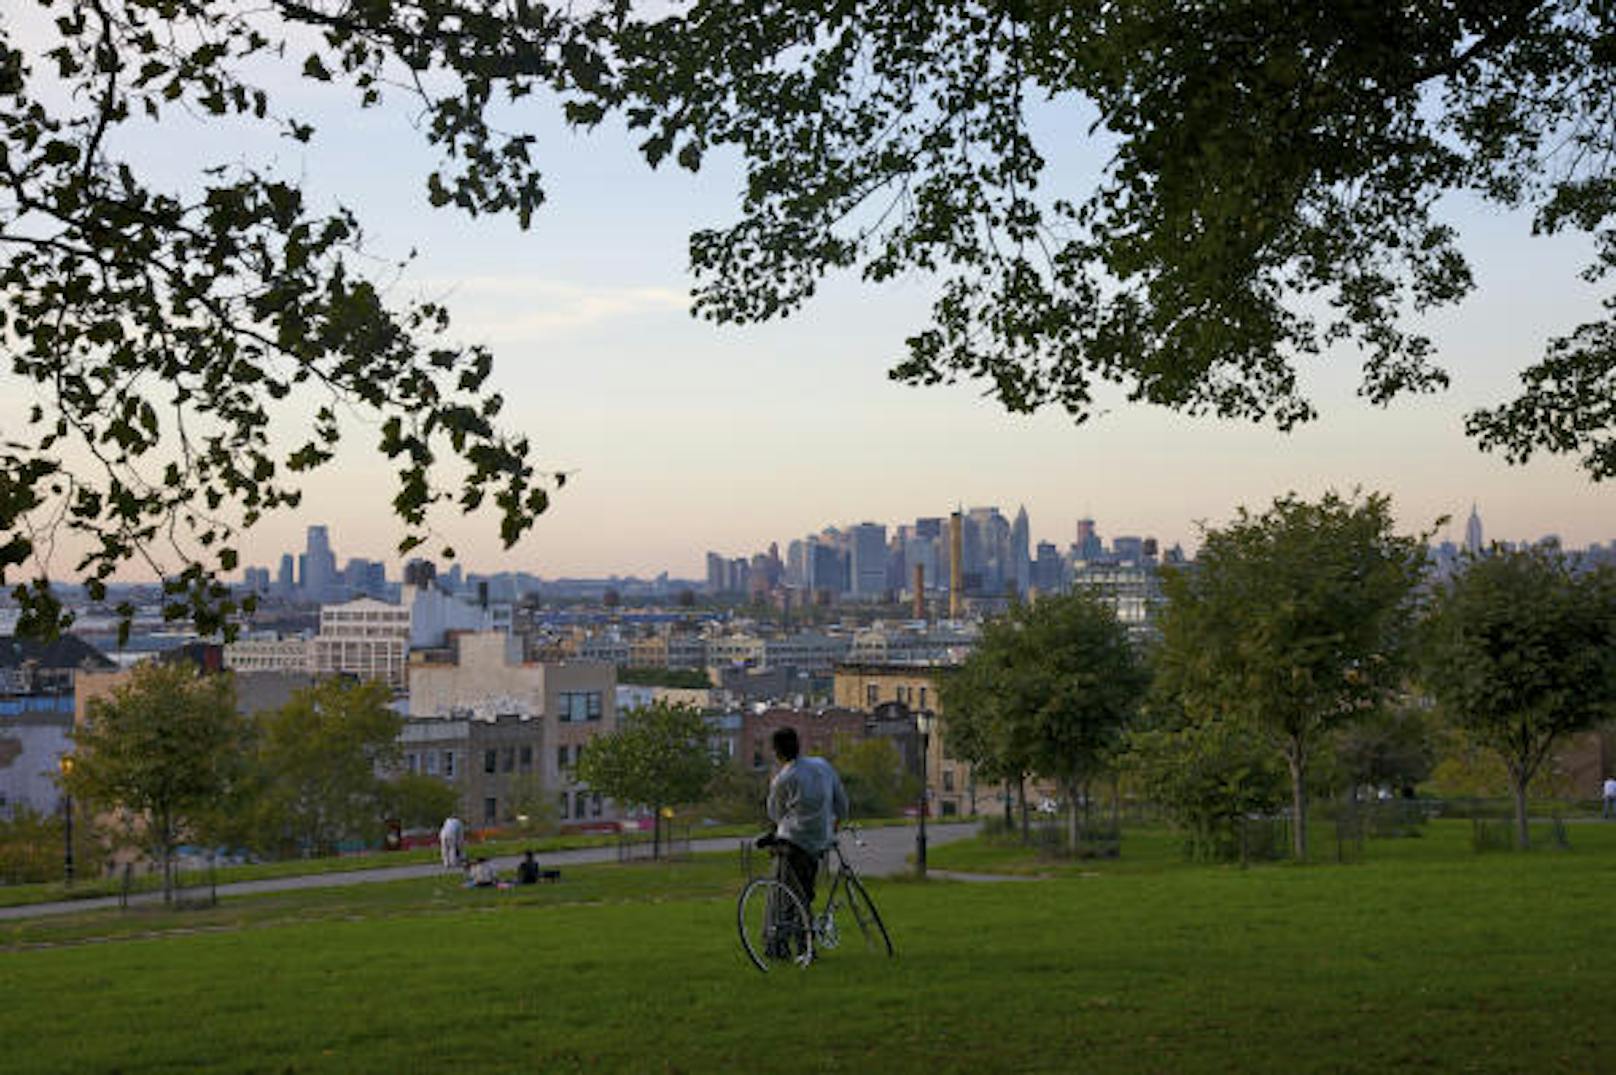 <b>Sunset Park, New York (USA):</b> "Eine von Brooklyns aufregendsten Nachbarschaften, die noch als Geheimtipp gelten. Im Zentrum einer bunten Mischung aus verschiedenen Kulturen und Traditionen steht die namensgebende Grünfläche: Sunset Park befindet sich auf einem der höchsten Hügel Brooklyns und bietet einen fantastischen Blick auf Manhattan, den Einheimische besonders an lauen Sommerabenden gerne genießen."